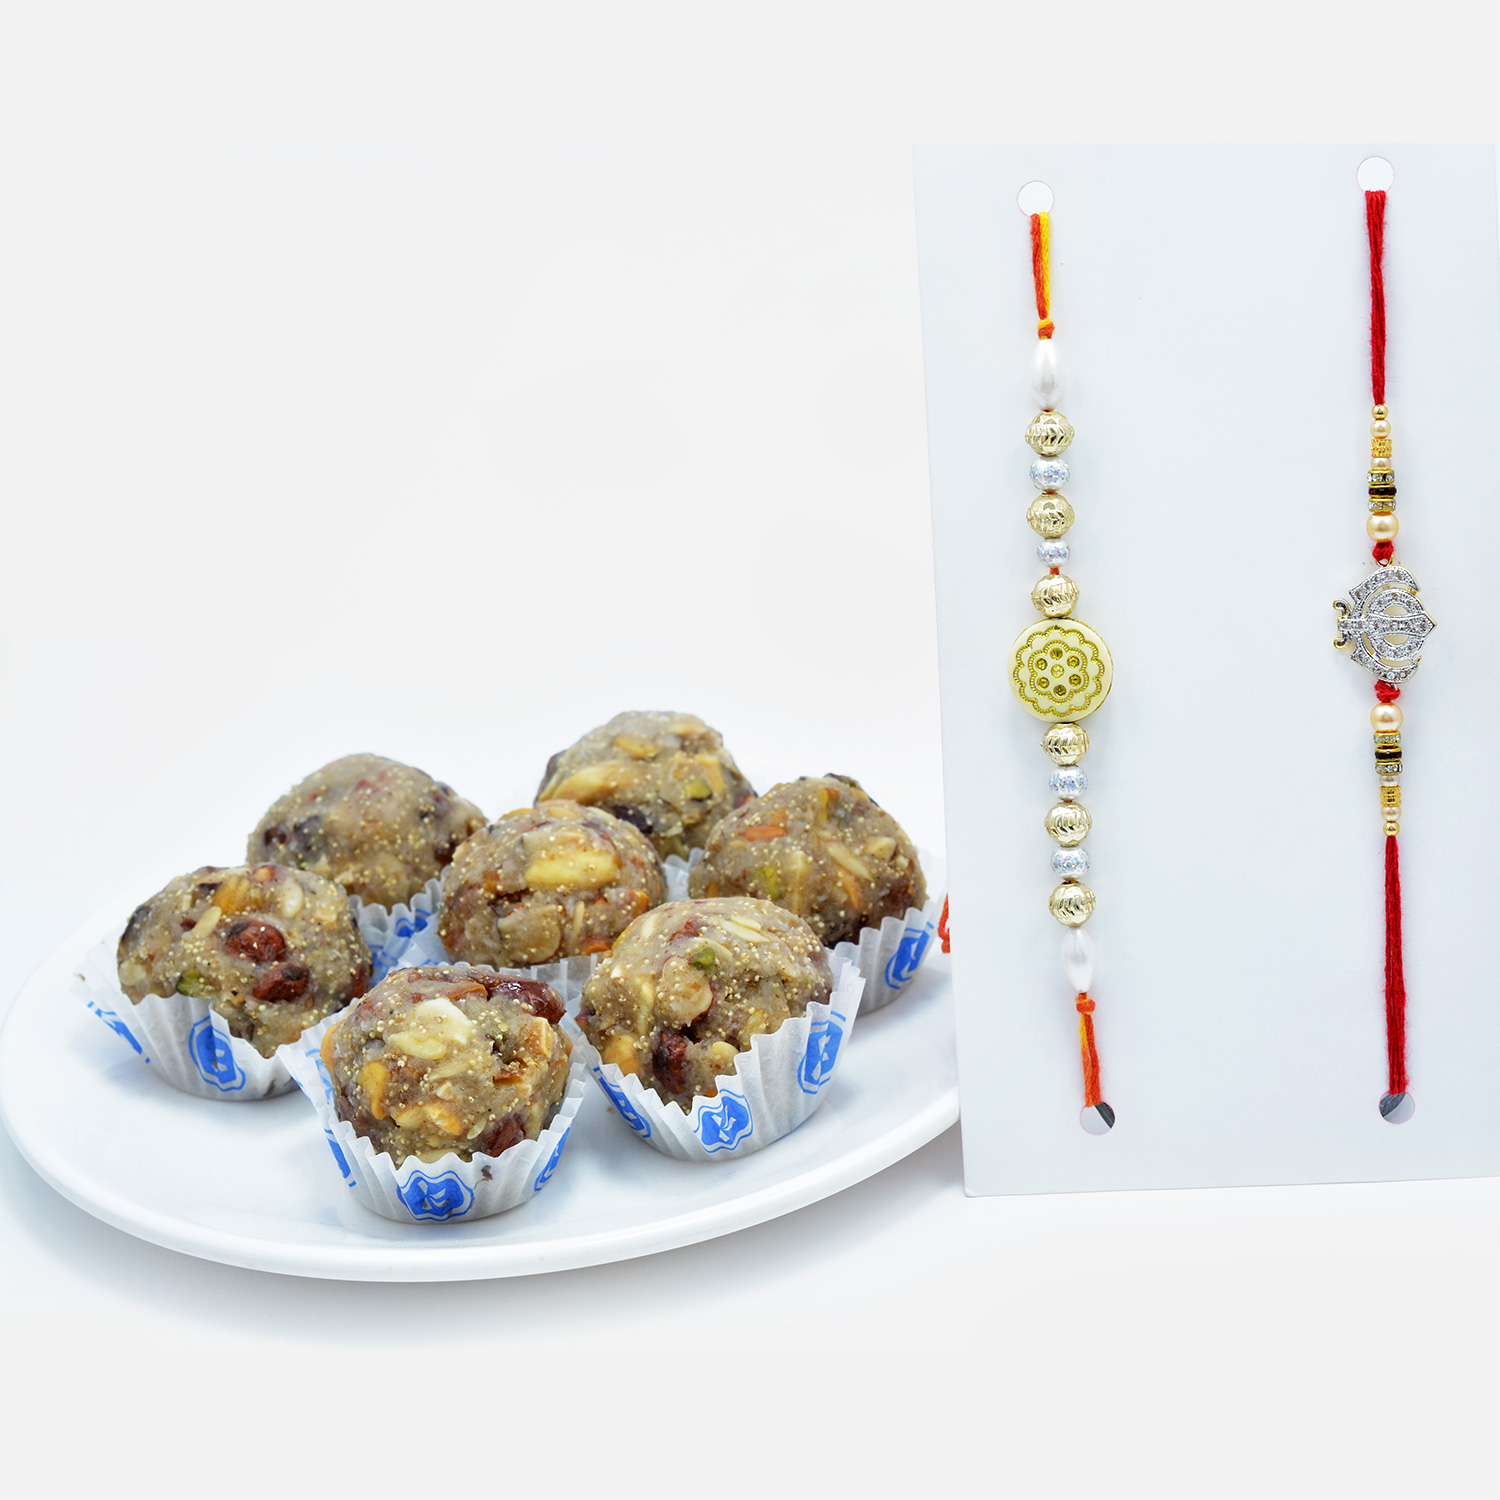 Mauli Threaded Sikh Rakhi and Gold-Silver Beads Rakhi Set of 2 with Dry Fruit Laddu